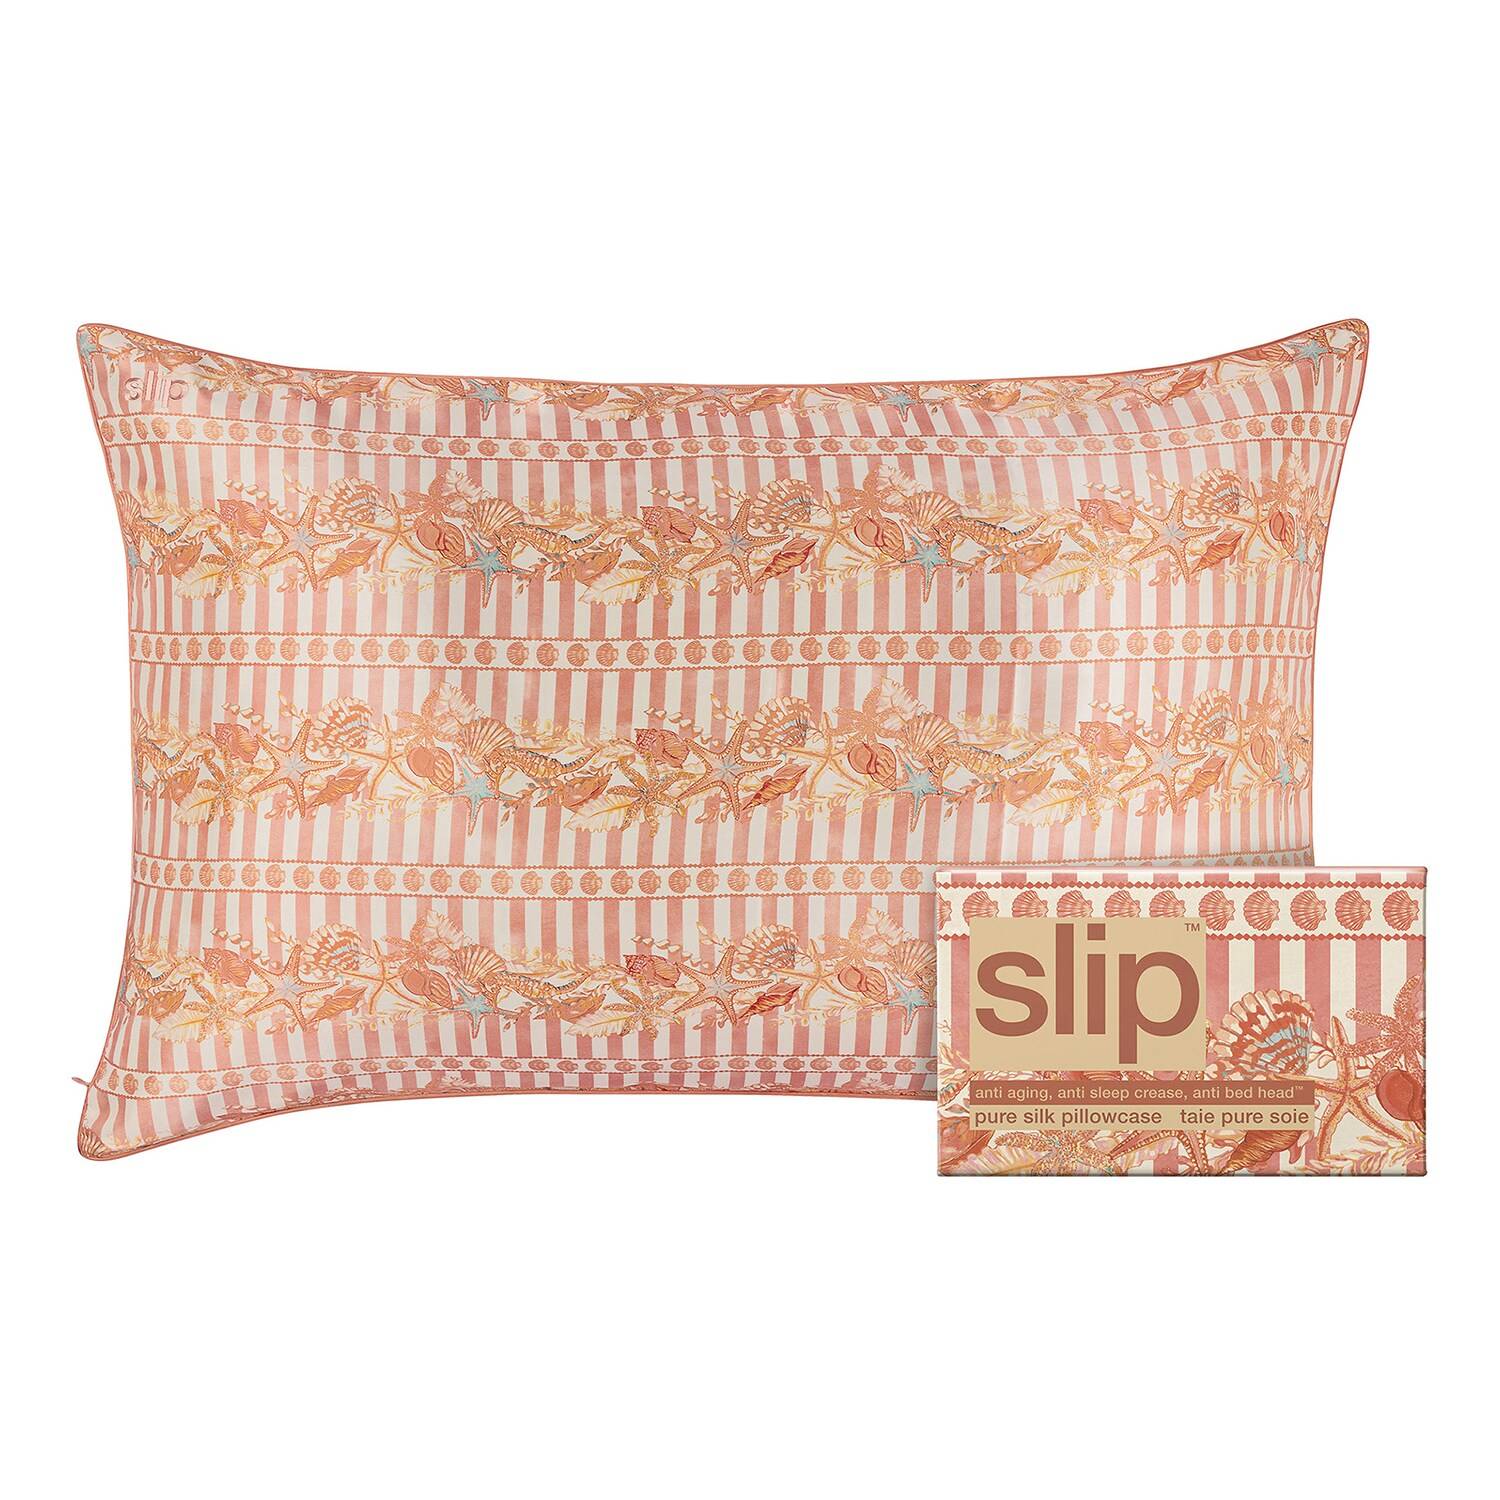 Slip Slip Pure Silk Queen Pillowcase - Anti Aging, Anti Sleep Crease, Anti Bed Head. Seashell